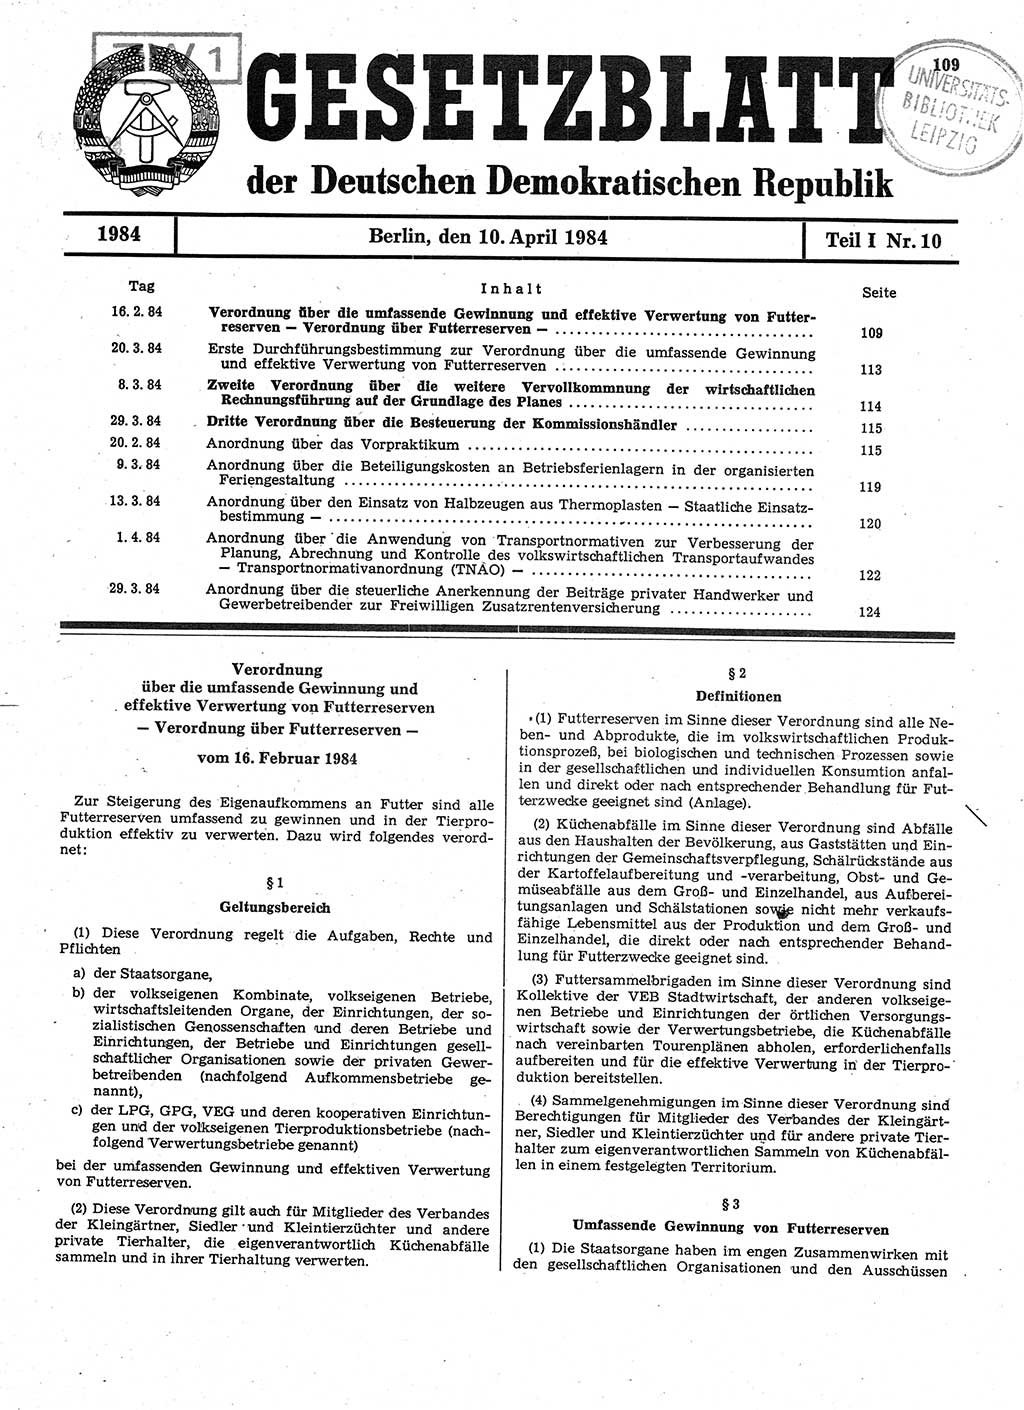 Gesetzblatt (GBl.) der Deutschen Demokratischen Republik (DDR) Teil Ⅰ 1984, Seite 109 (GBl. DDR Ⅰ 1984, S. 109)